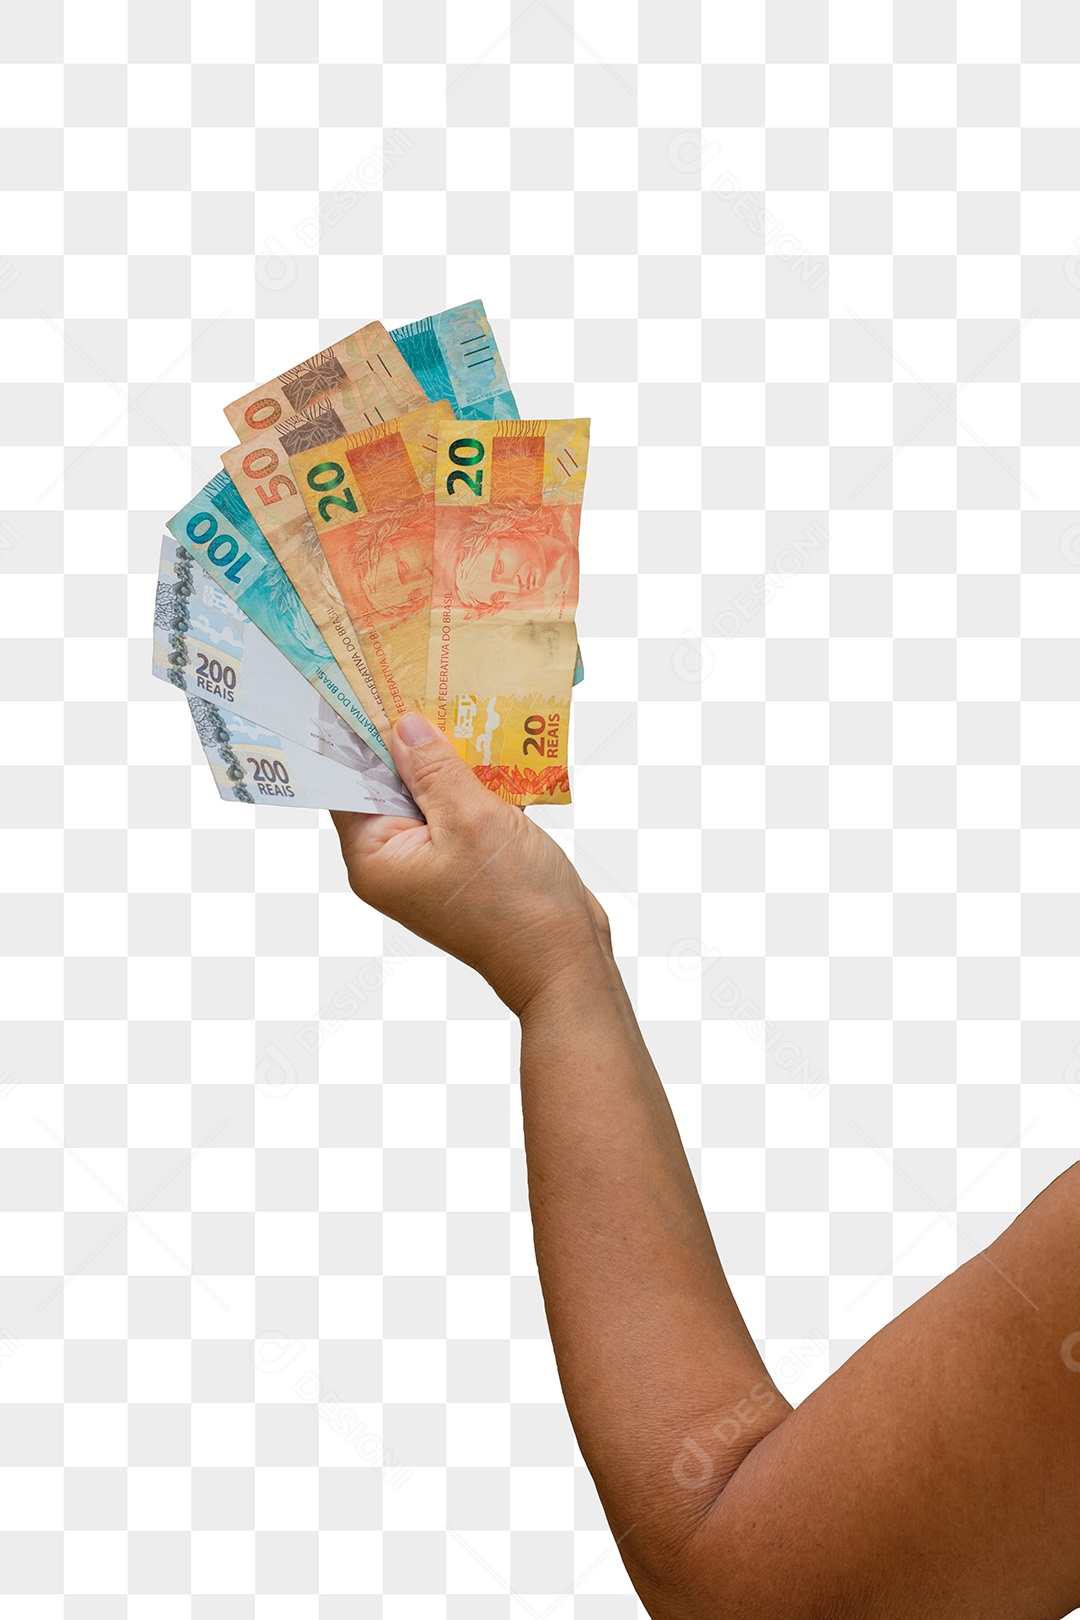 Segurando o dinheiro brasileiro real, notas de 200, 100, 50 e 20